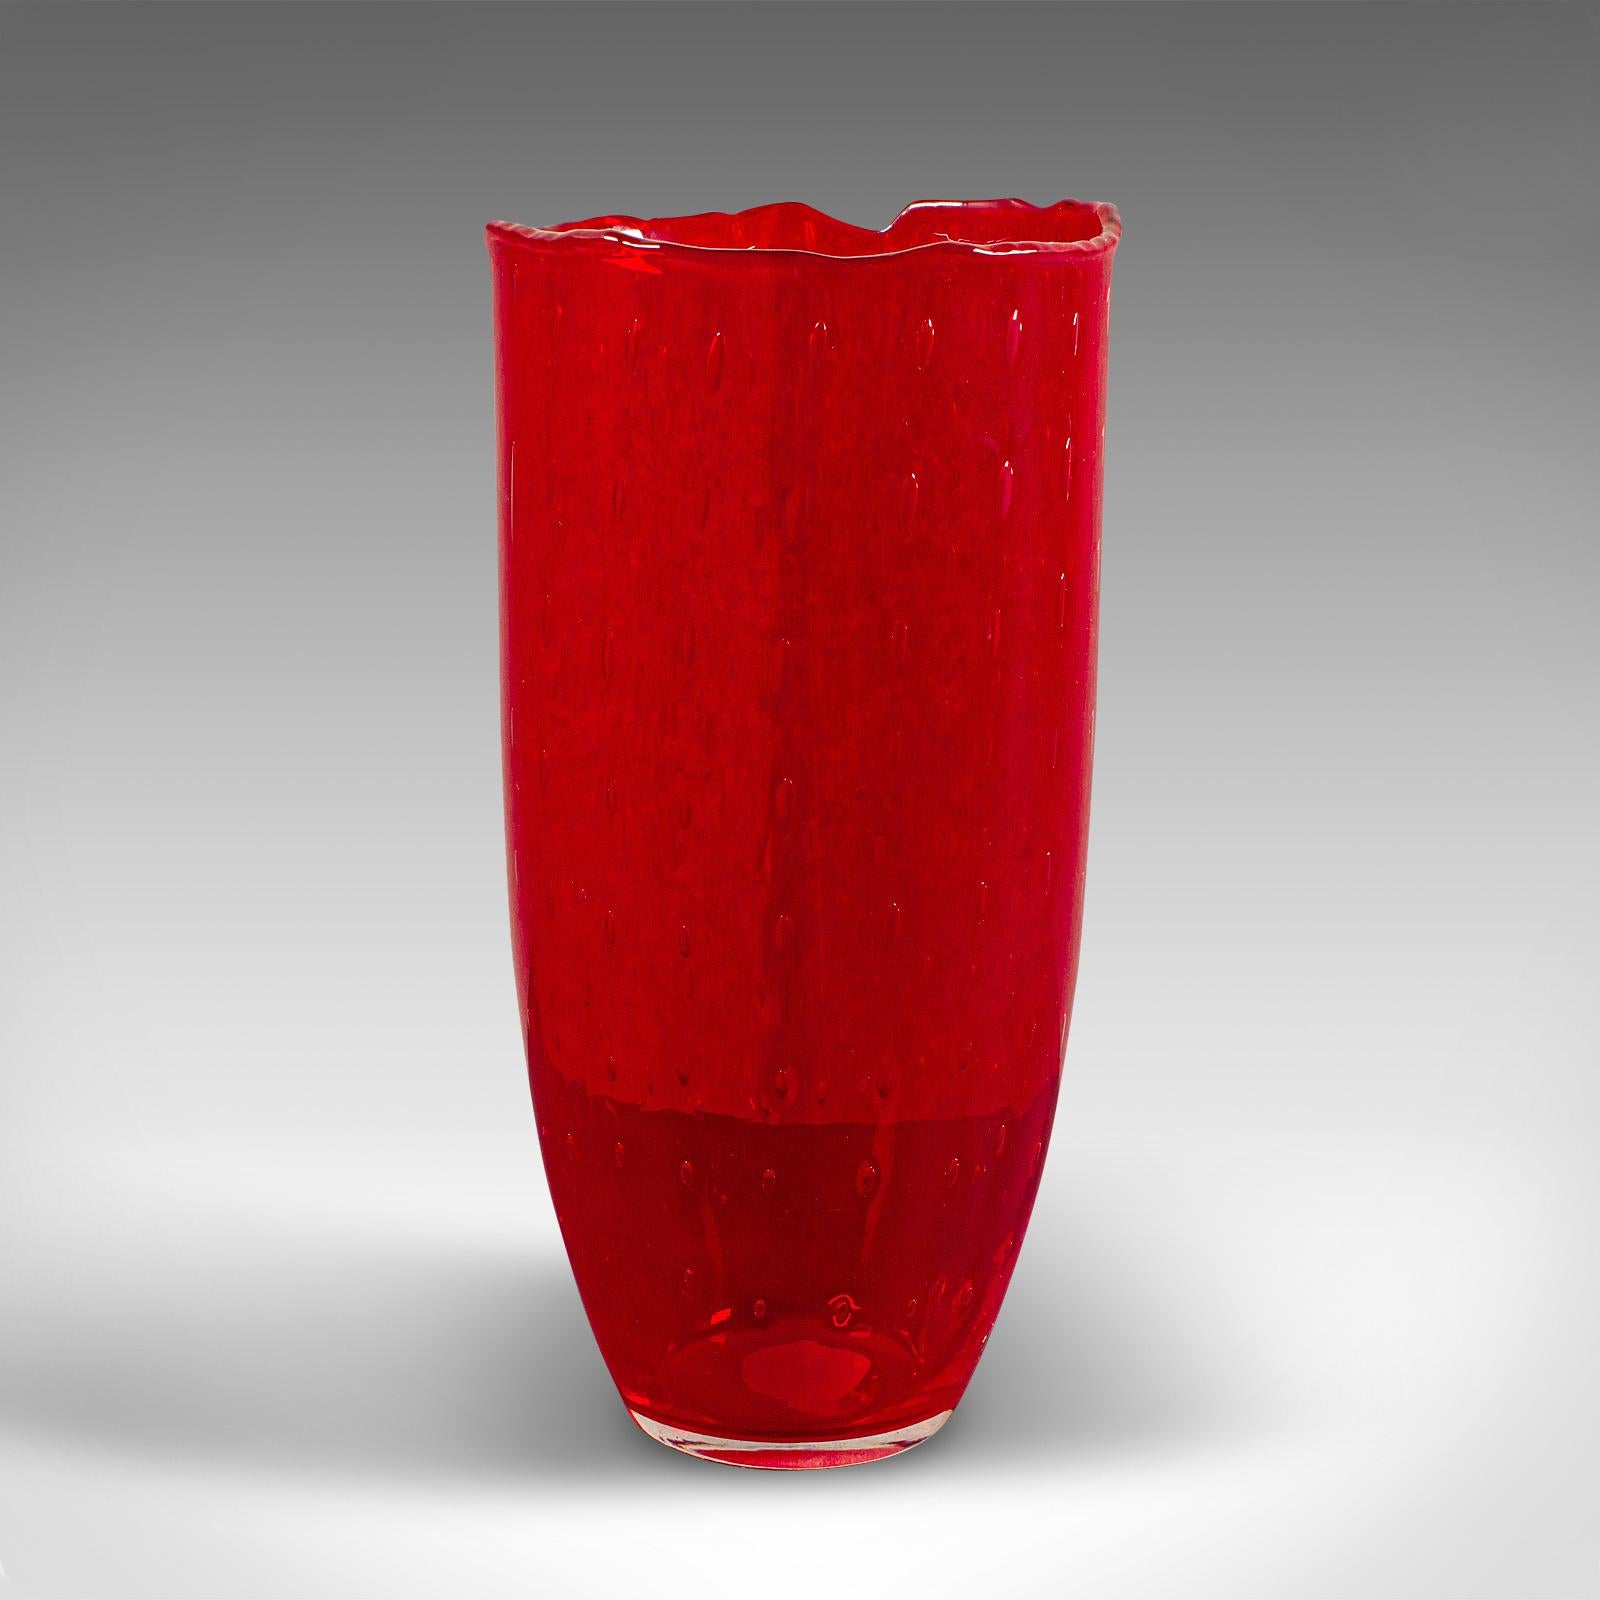 
Dies ist eine große Vintage-Vase. Ein italienischer Blumentopf aus Kunstglas aus dem späten 20. Jahrhundert, ca. 1970.

Faszinierende Vase aus dem späten 20. Jahrhundert mit starkem optischen Reiz
Zeigt eine wünschenswerte gealterte Patina und in